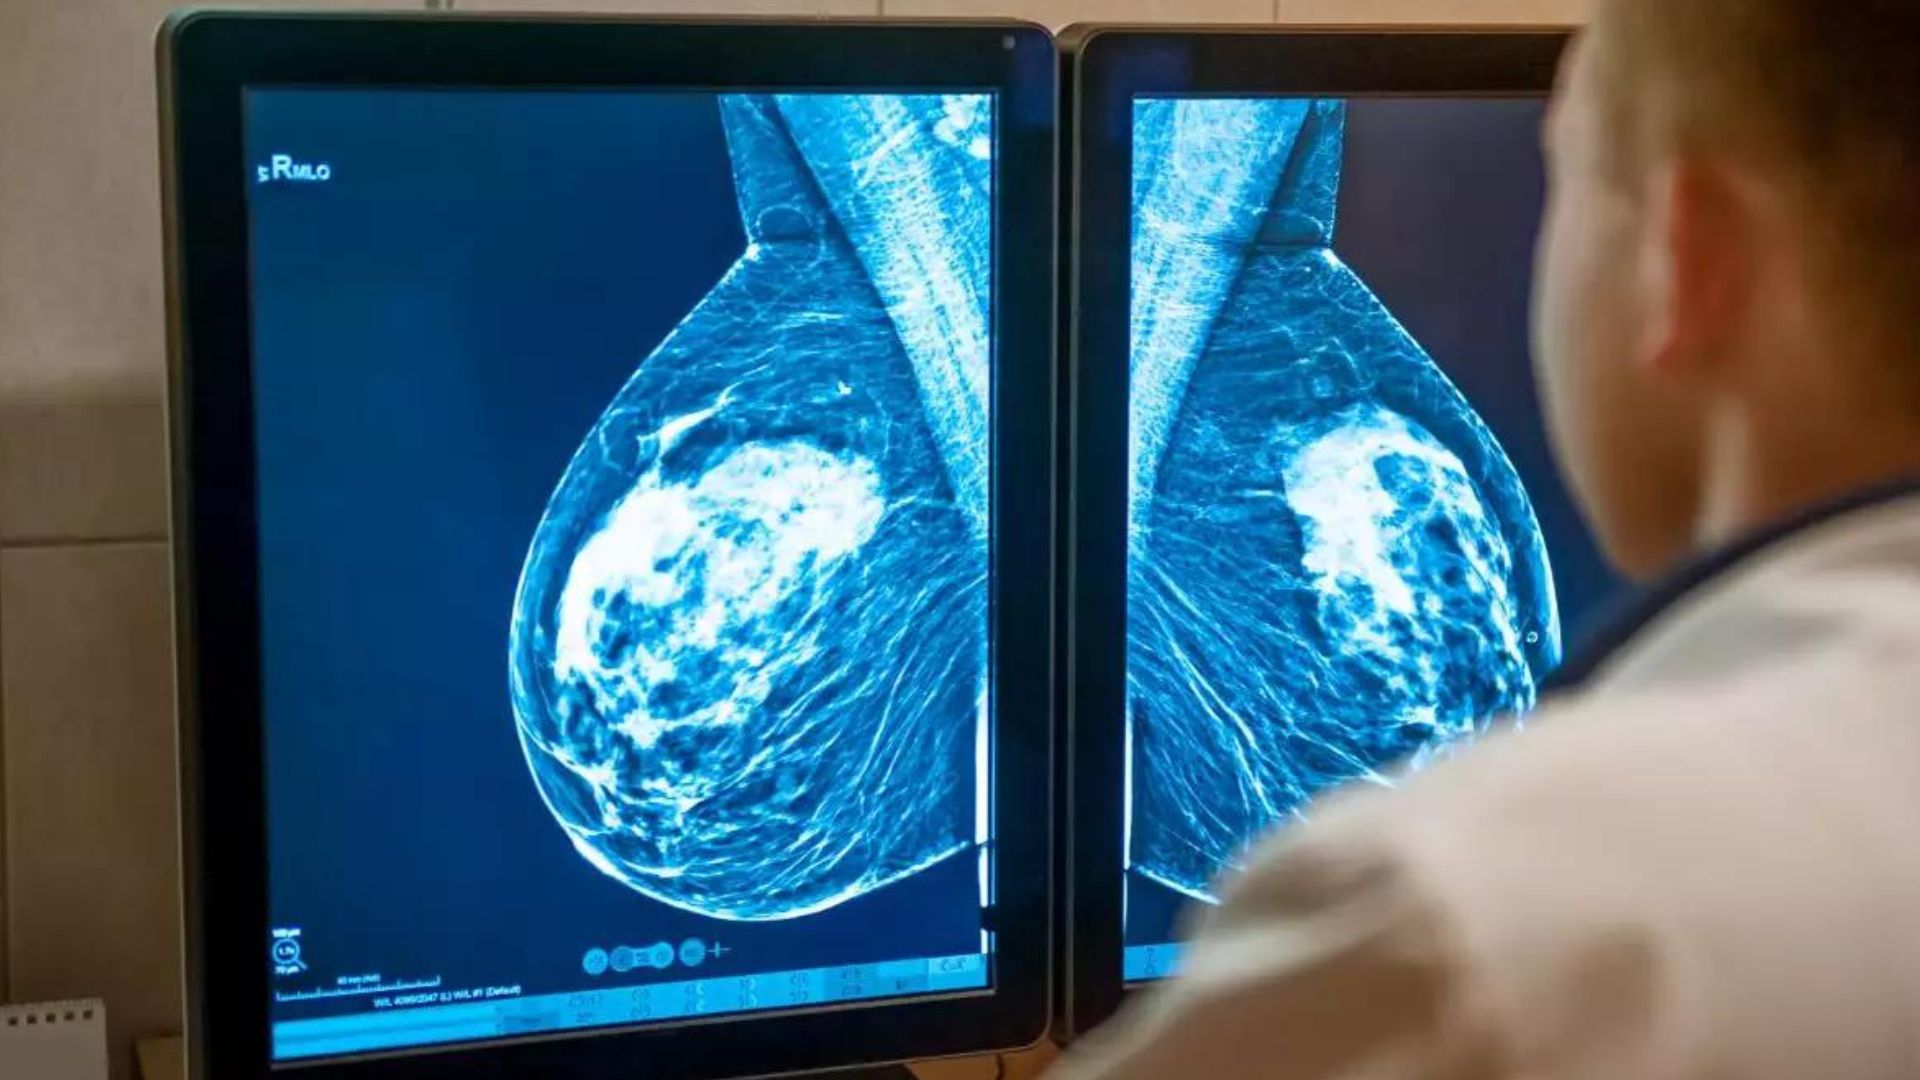 mamografias-antes-de-los-30-anos-son-necesarias-para-mujeres-con-alto-riesgo